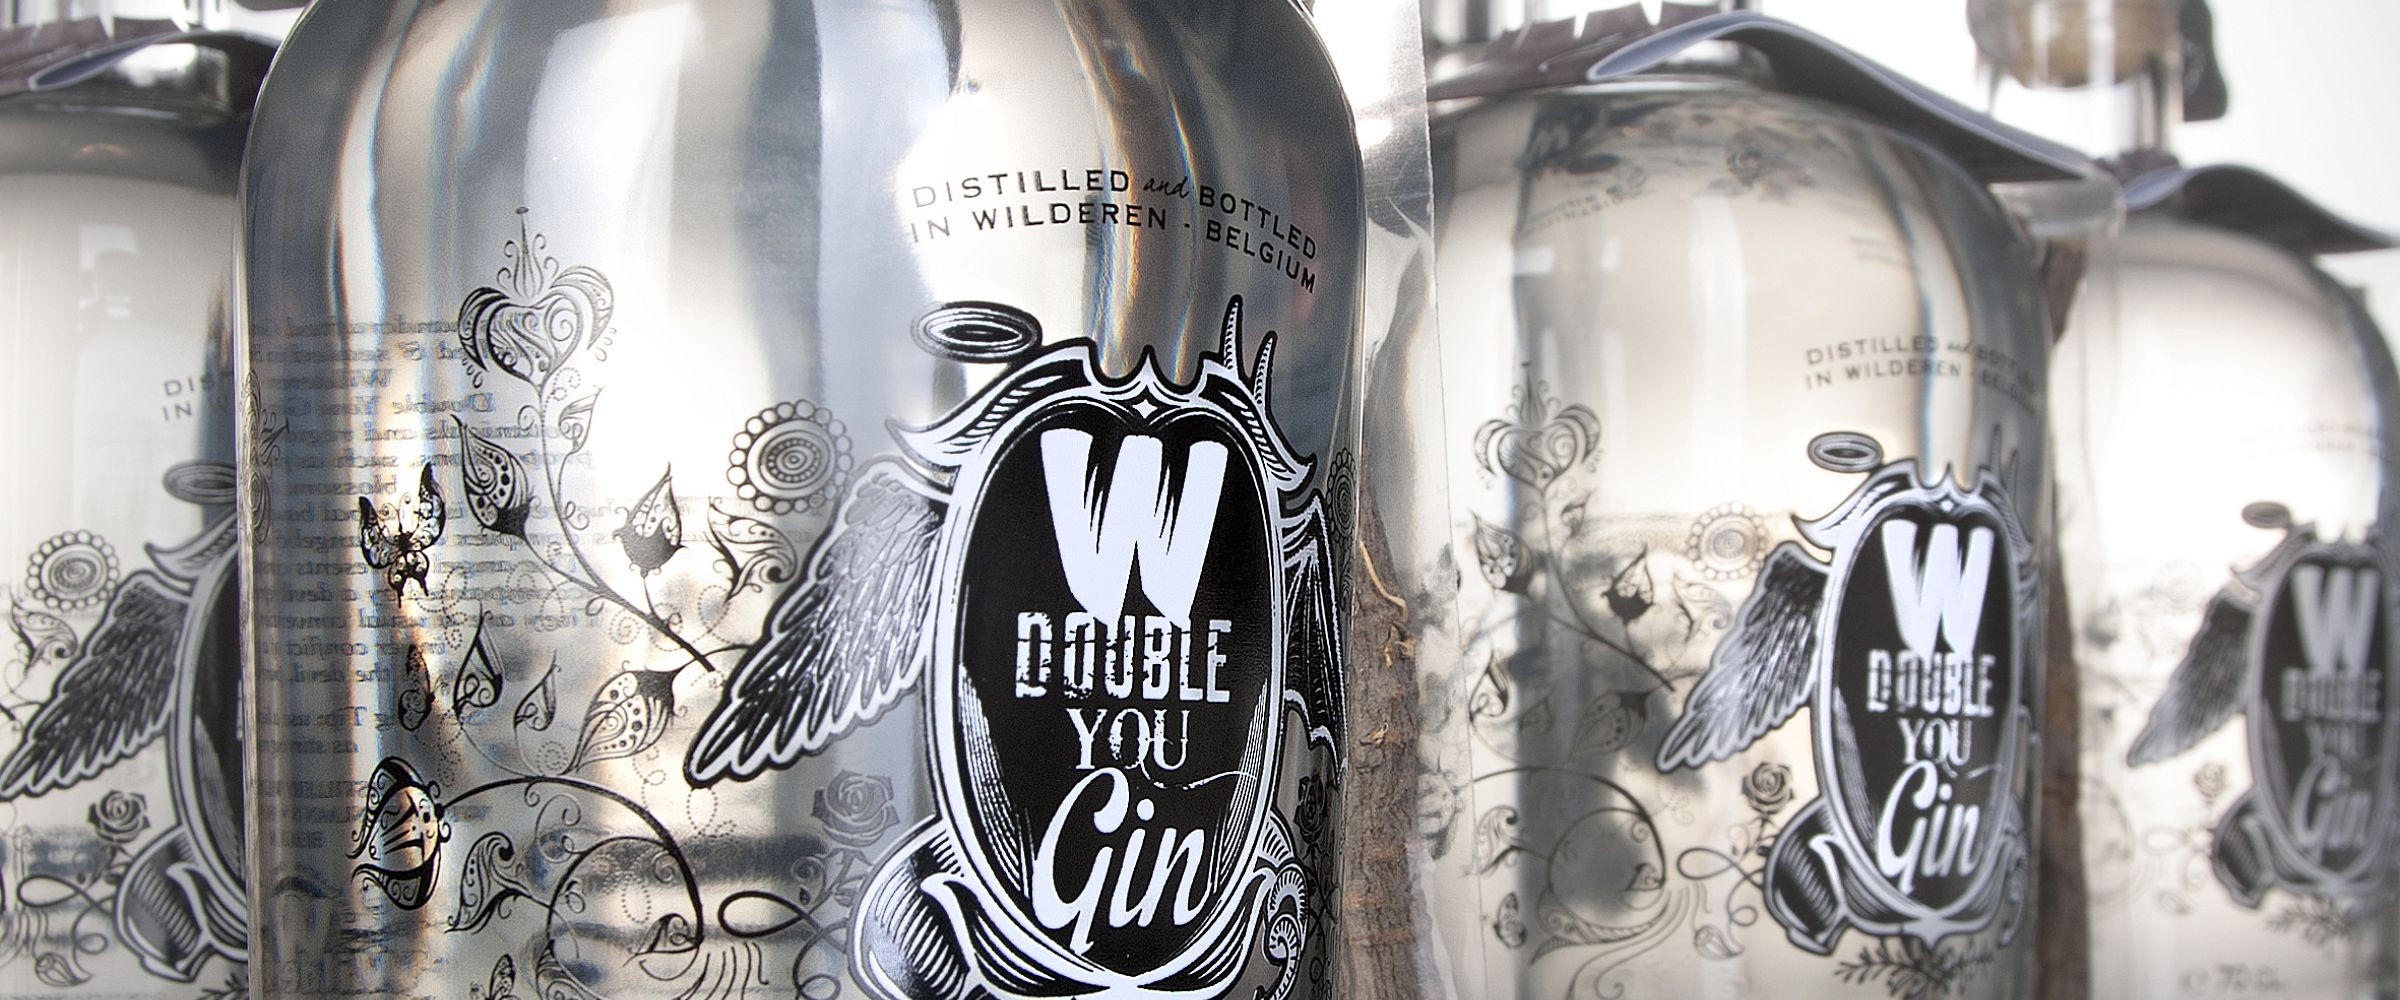 Belgische Double You Gin wint prestigieuze Diamond Award